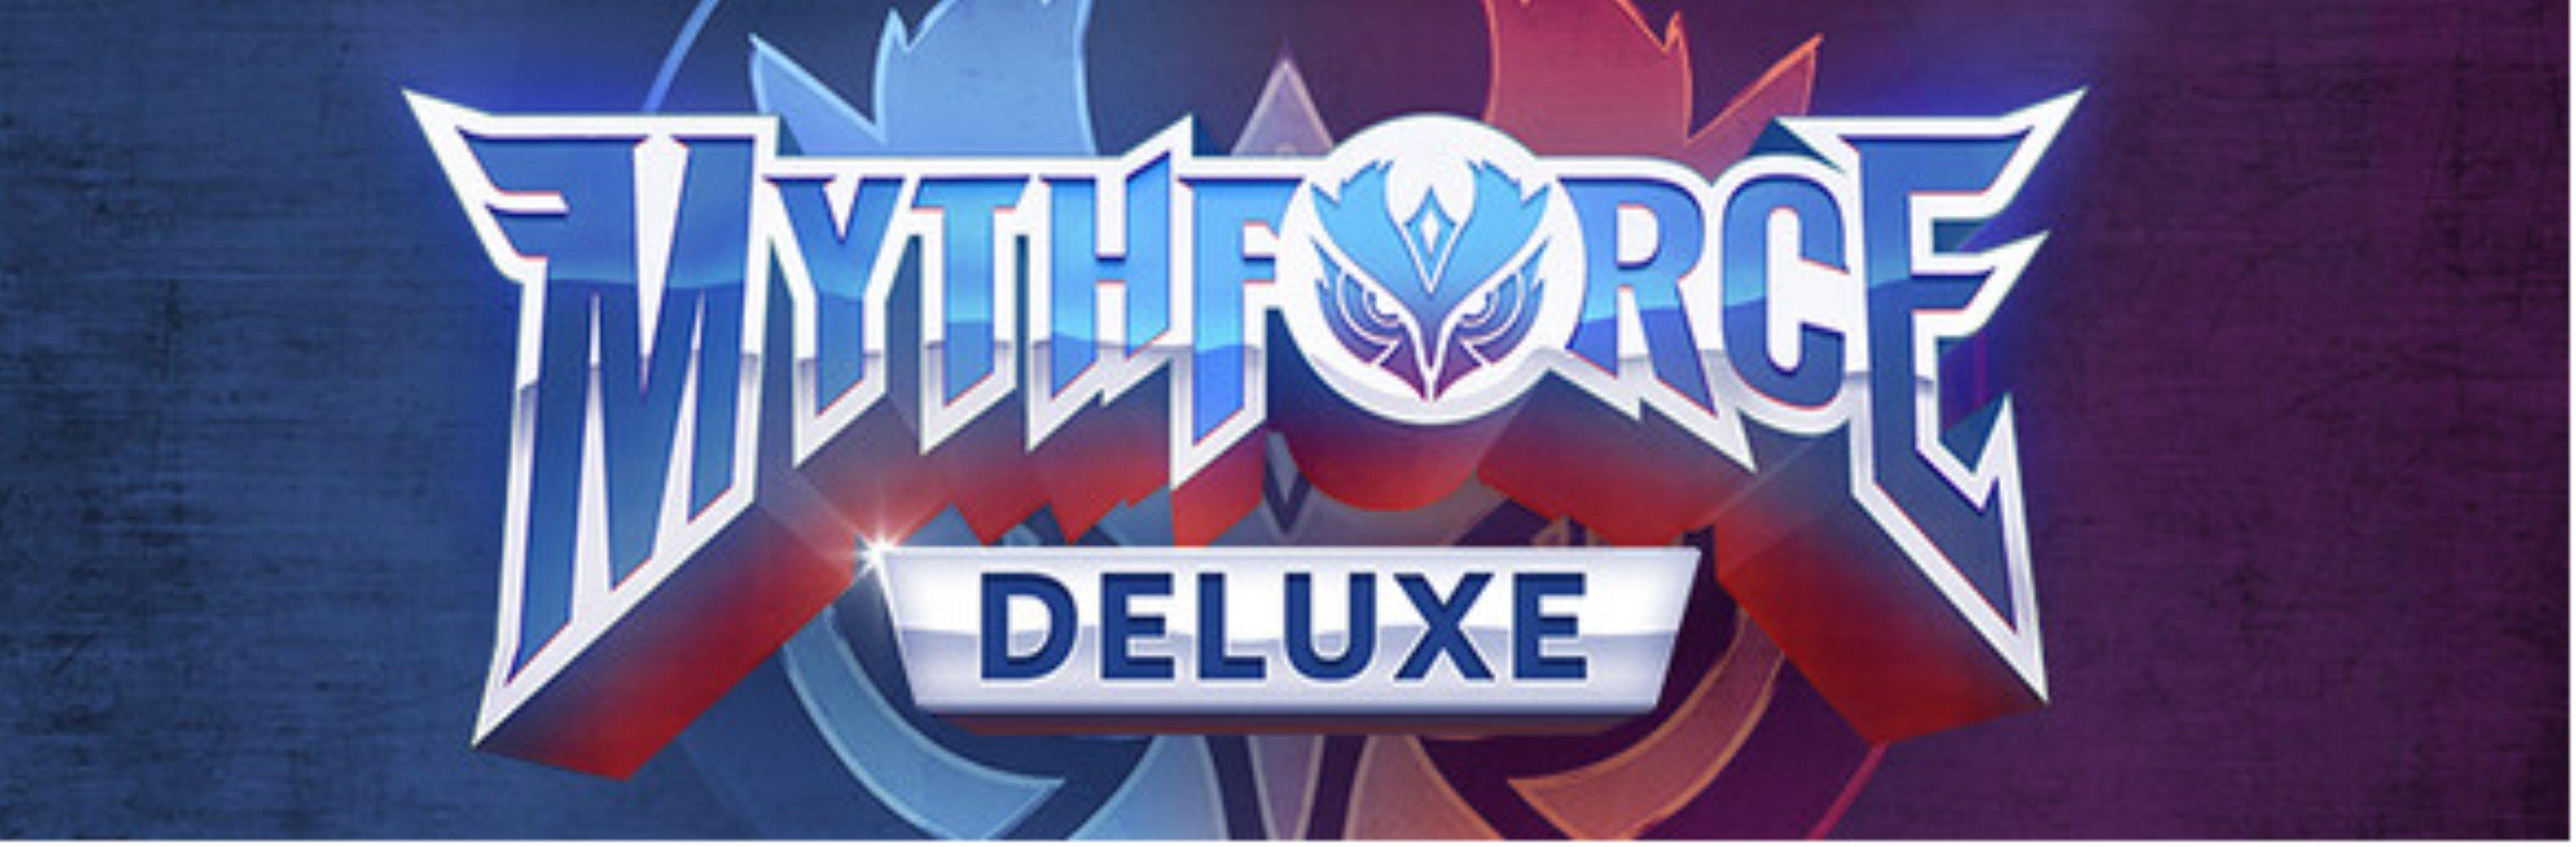 Mythforce Deluxe - PC